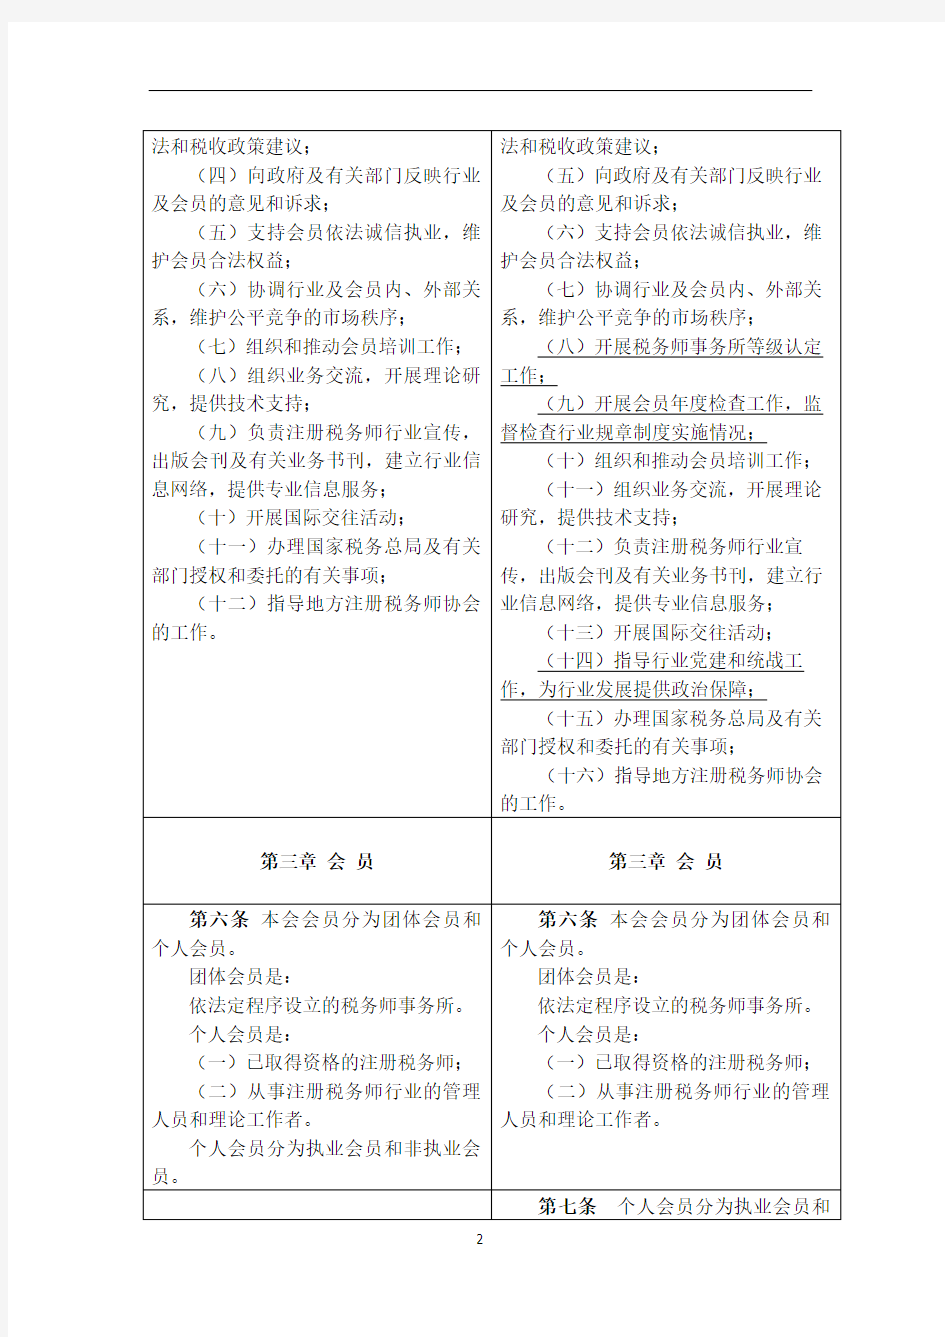 中国注册税务师协会章程修改对照表